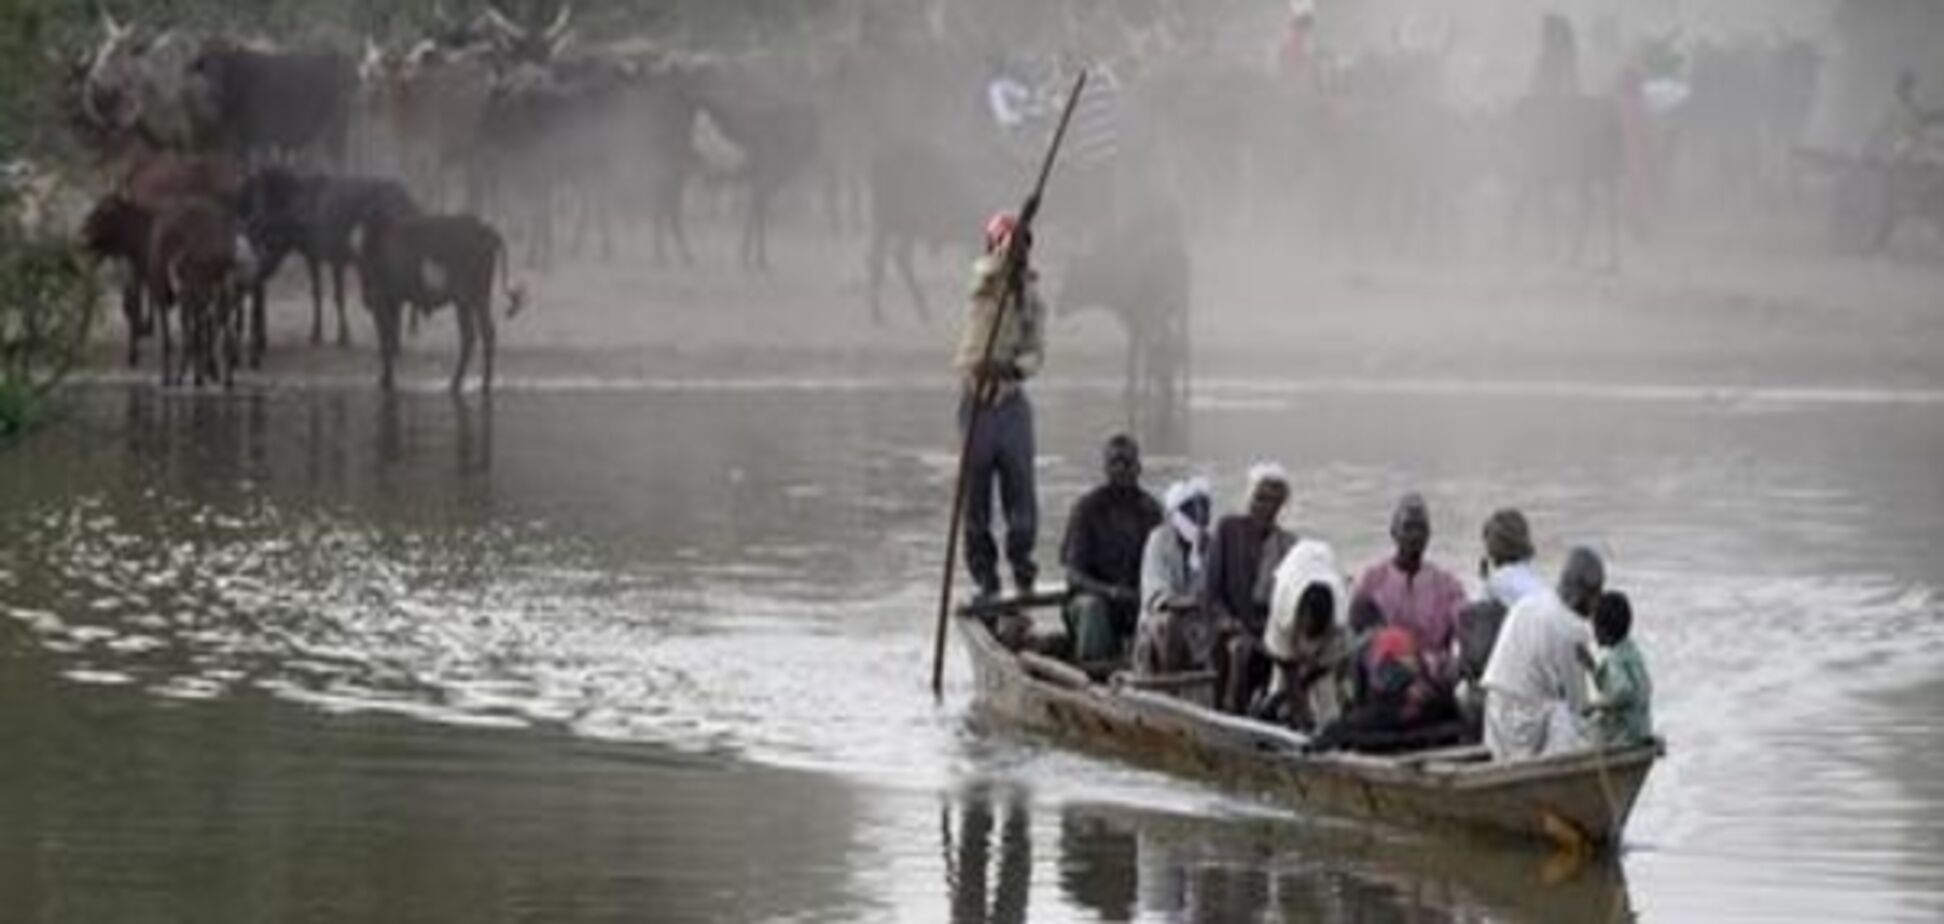 Європа вкладе понад 400 мільйонів євро в регіон озера Чад